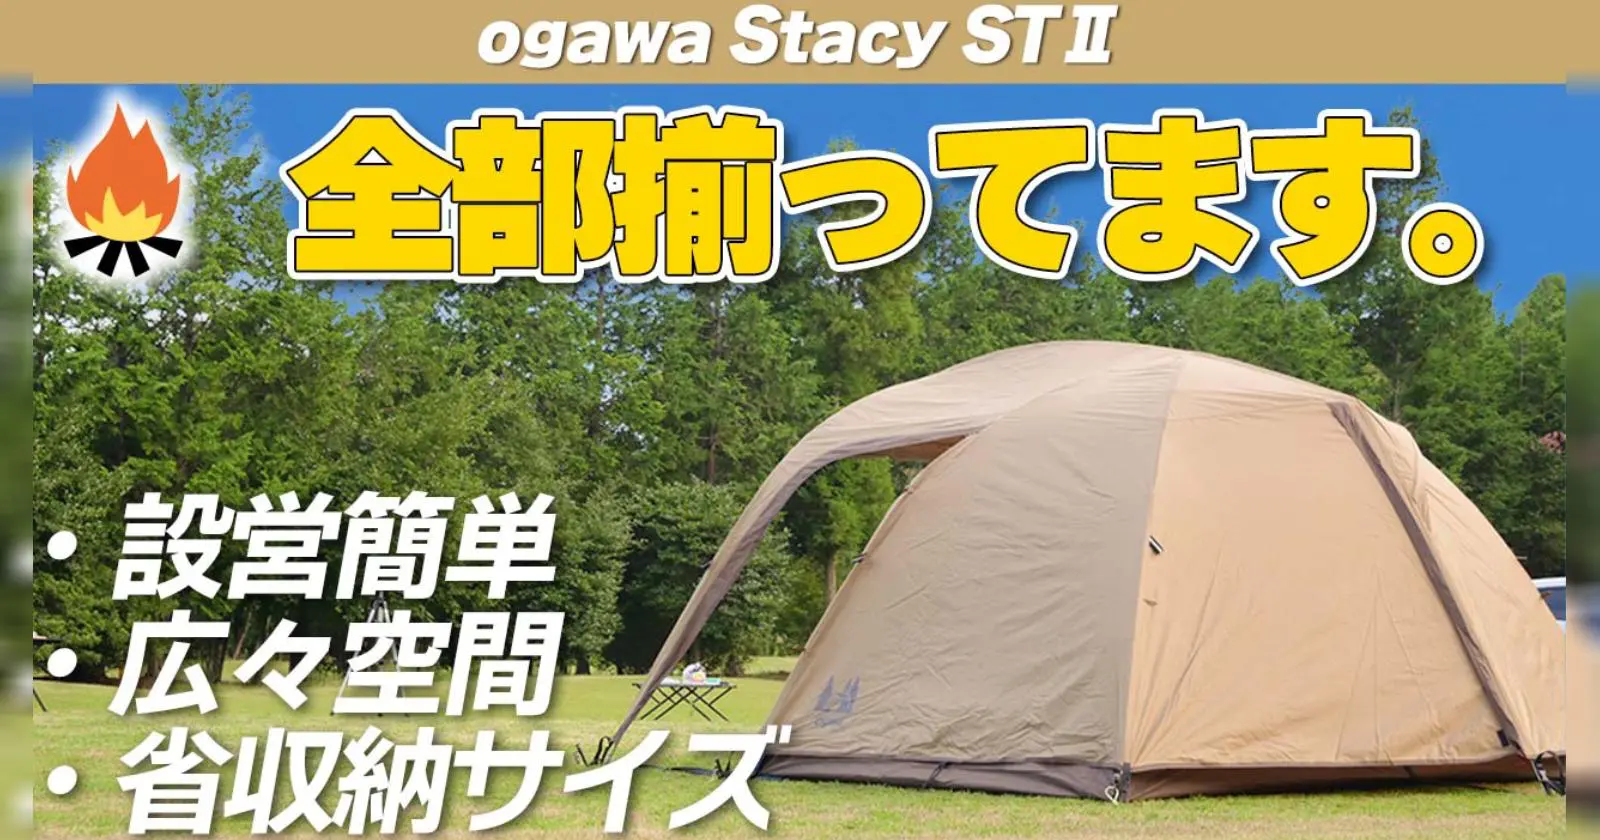 5☆好評 ogawa オガワ アウトドア キャンプ テント ドーム型 ステイシー ST-2 サンドベージュ 2616-80 テント用 マ 